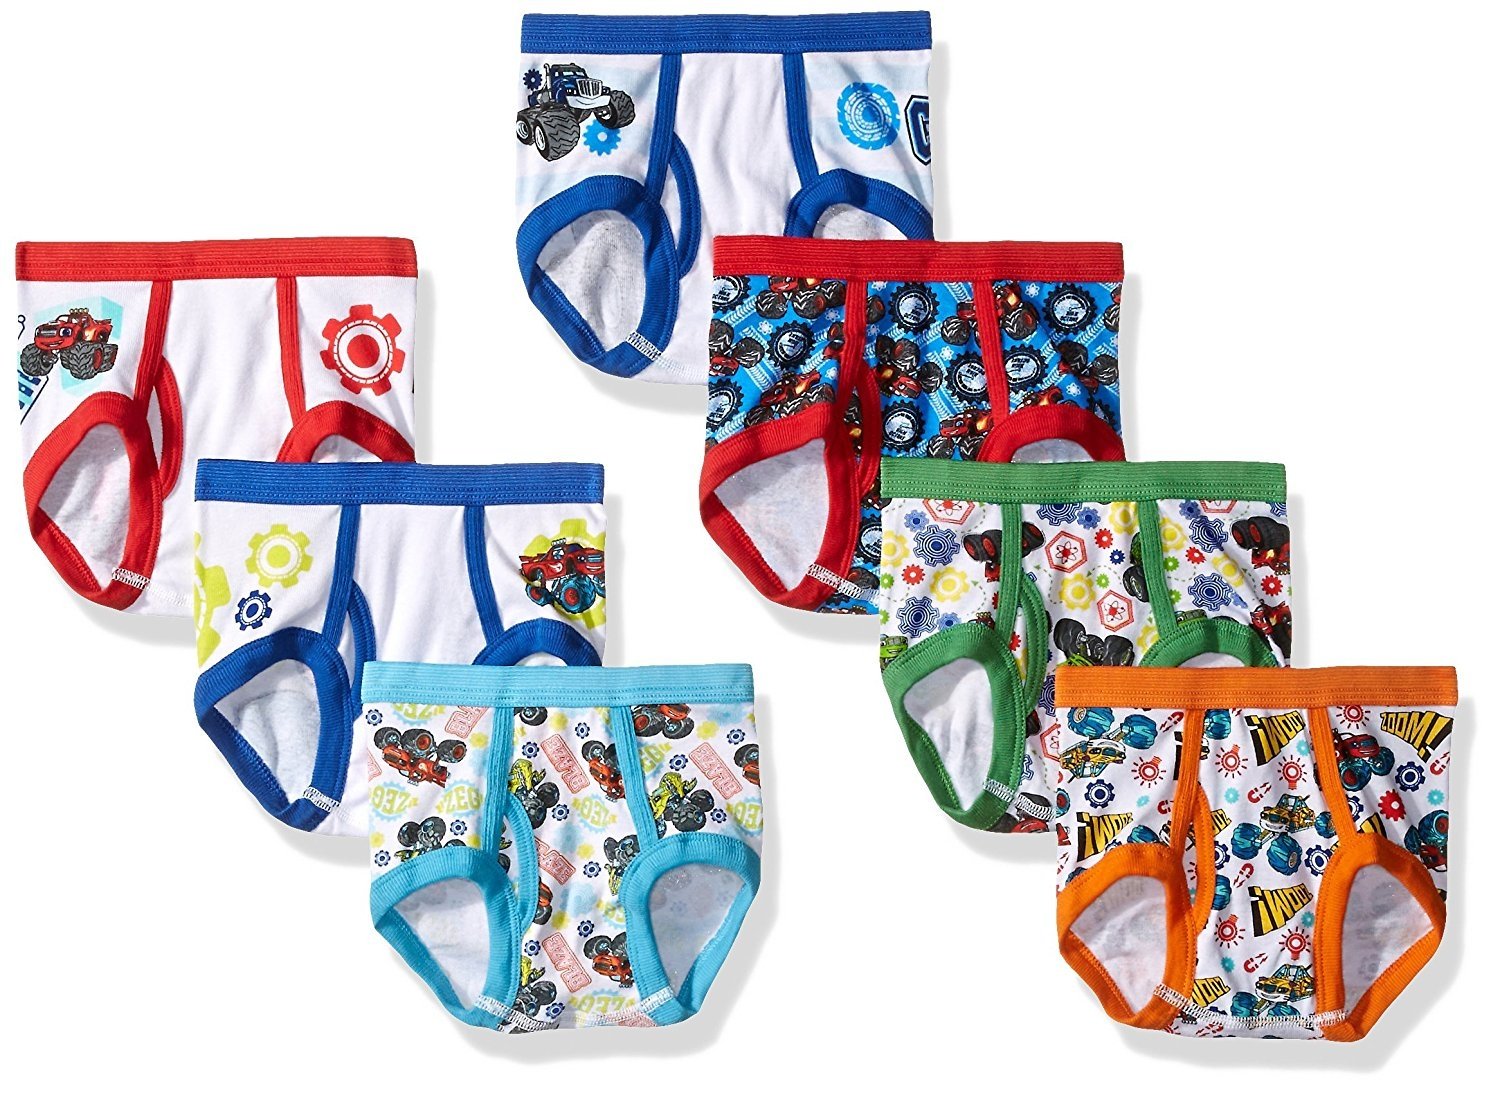 Blaze Monster Machine Trucks Toddler Boys 4t Underwear 7 Briefs Nickelodeon  for sale online